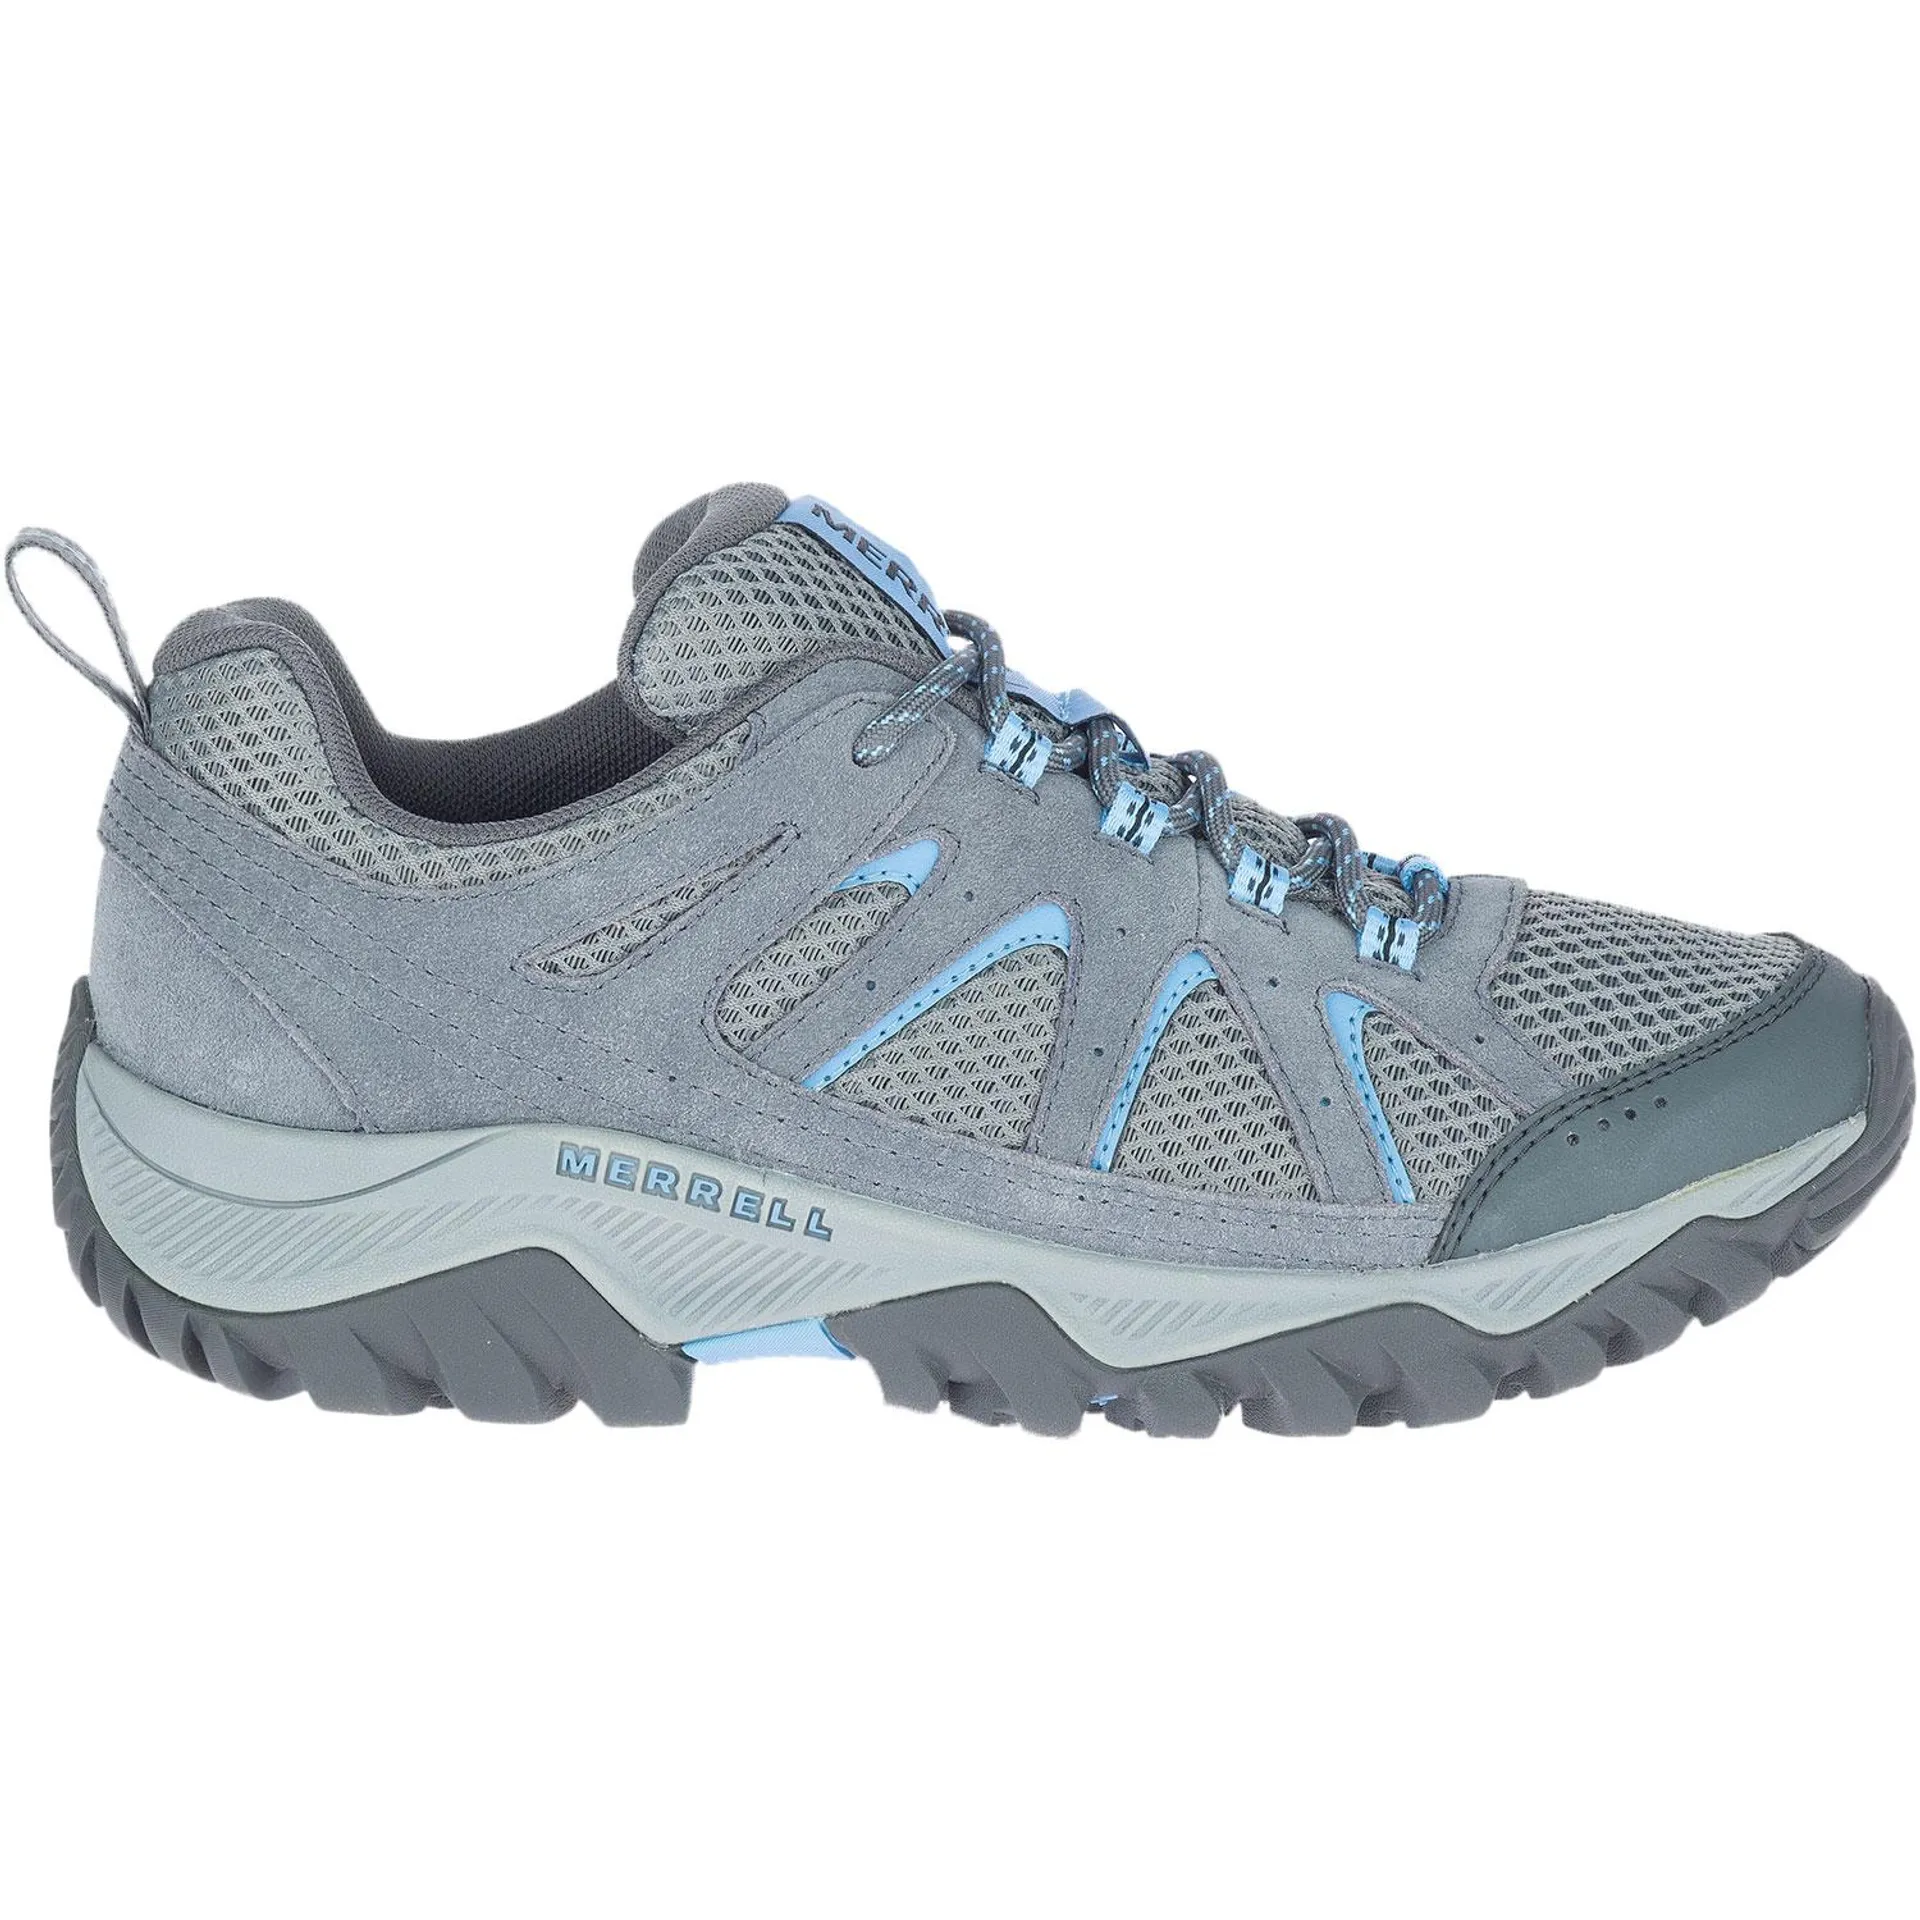 Merrell Oakcreek Low Waterproof Women's Hiking Shoes